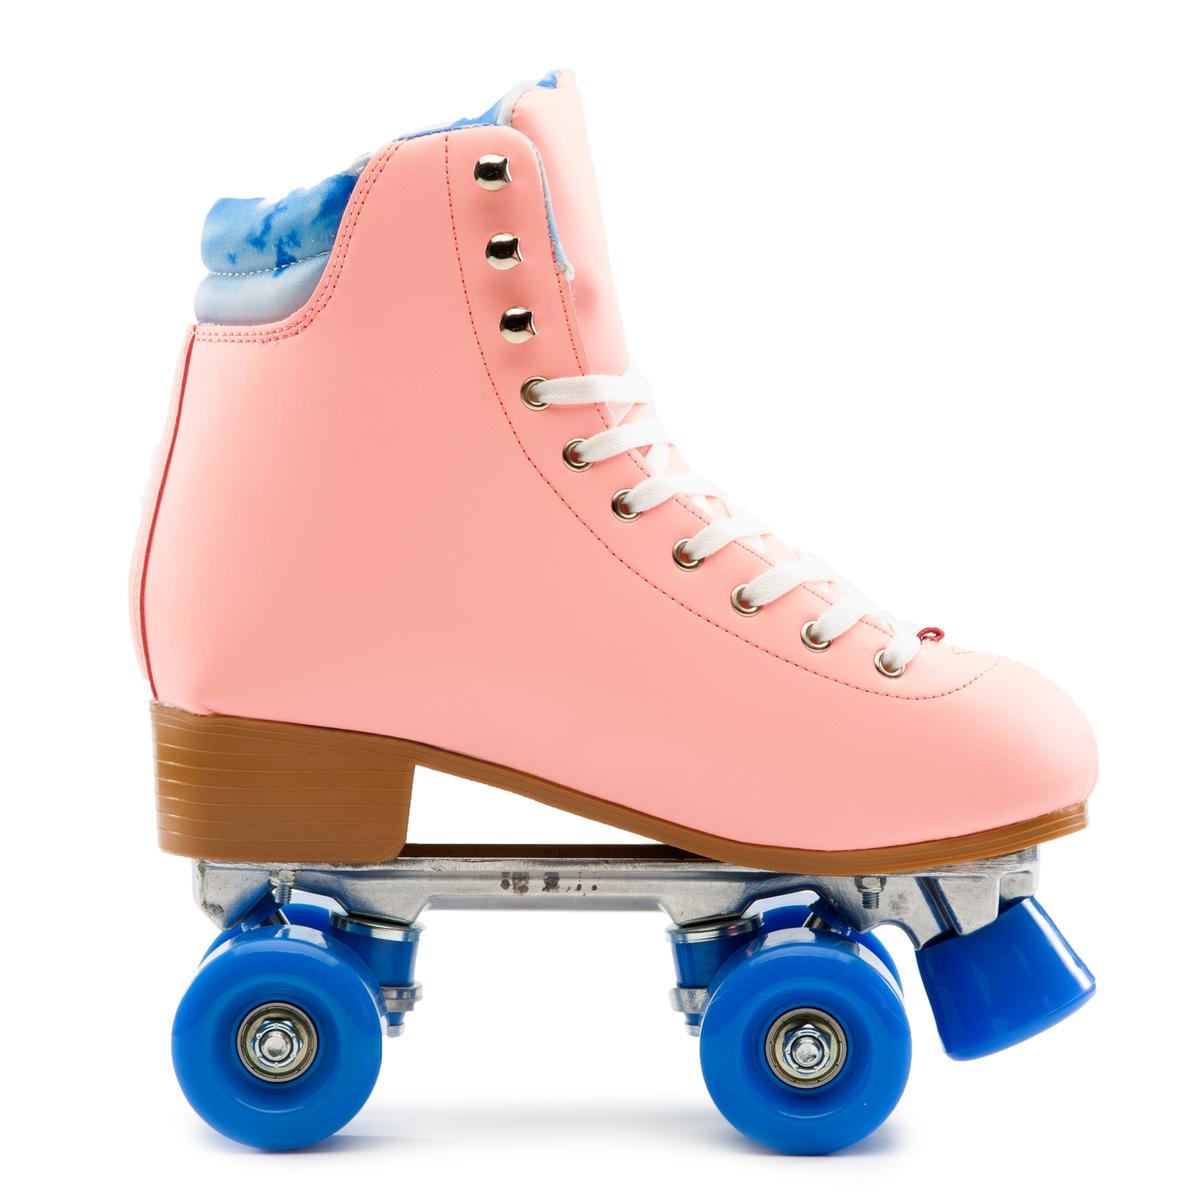 Archie-42 Roller Skates